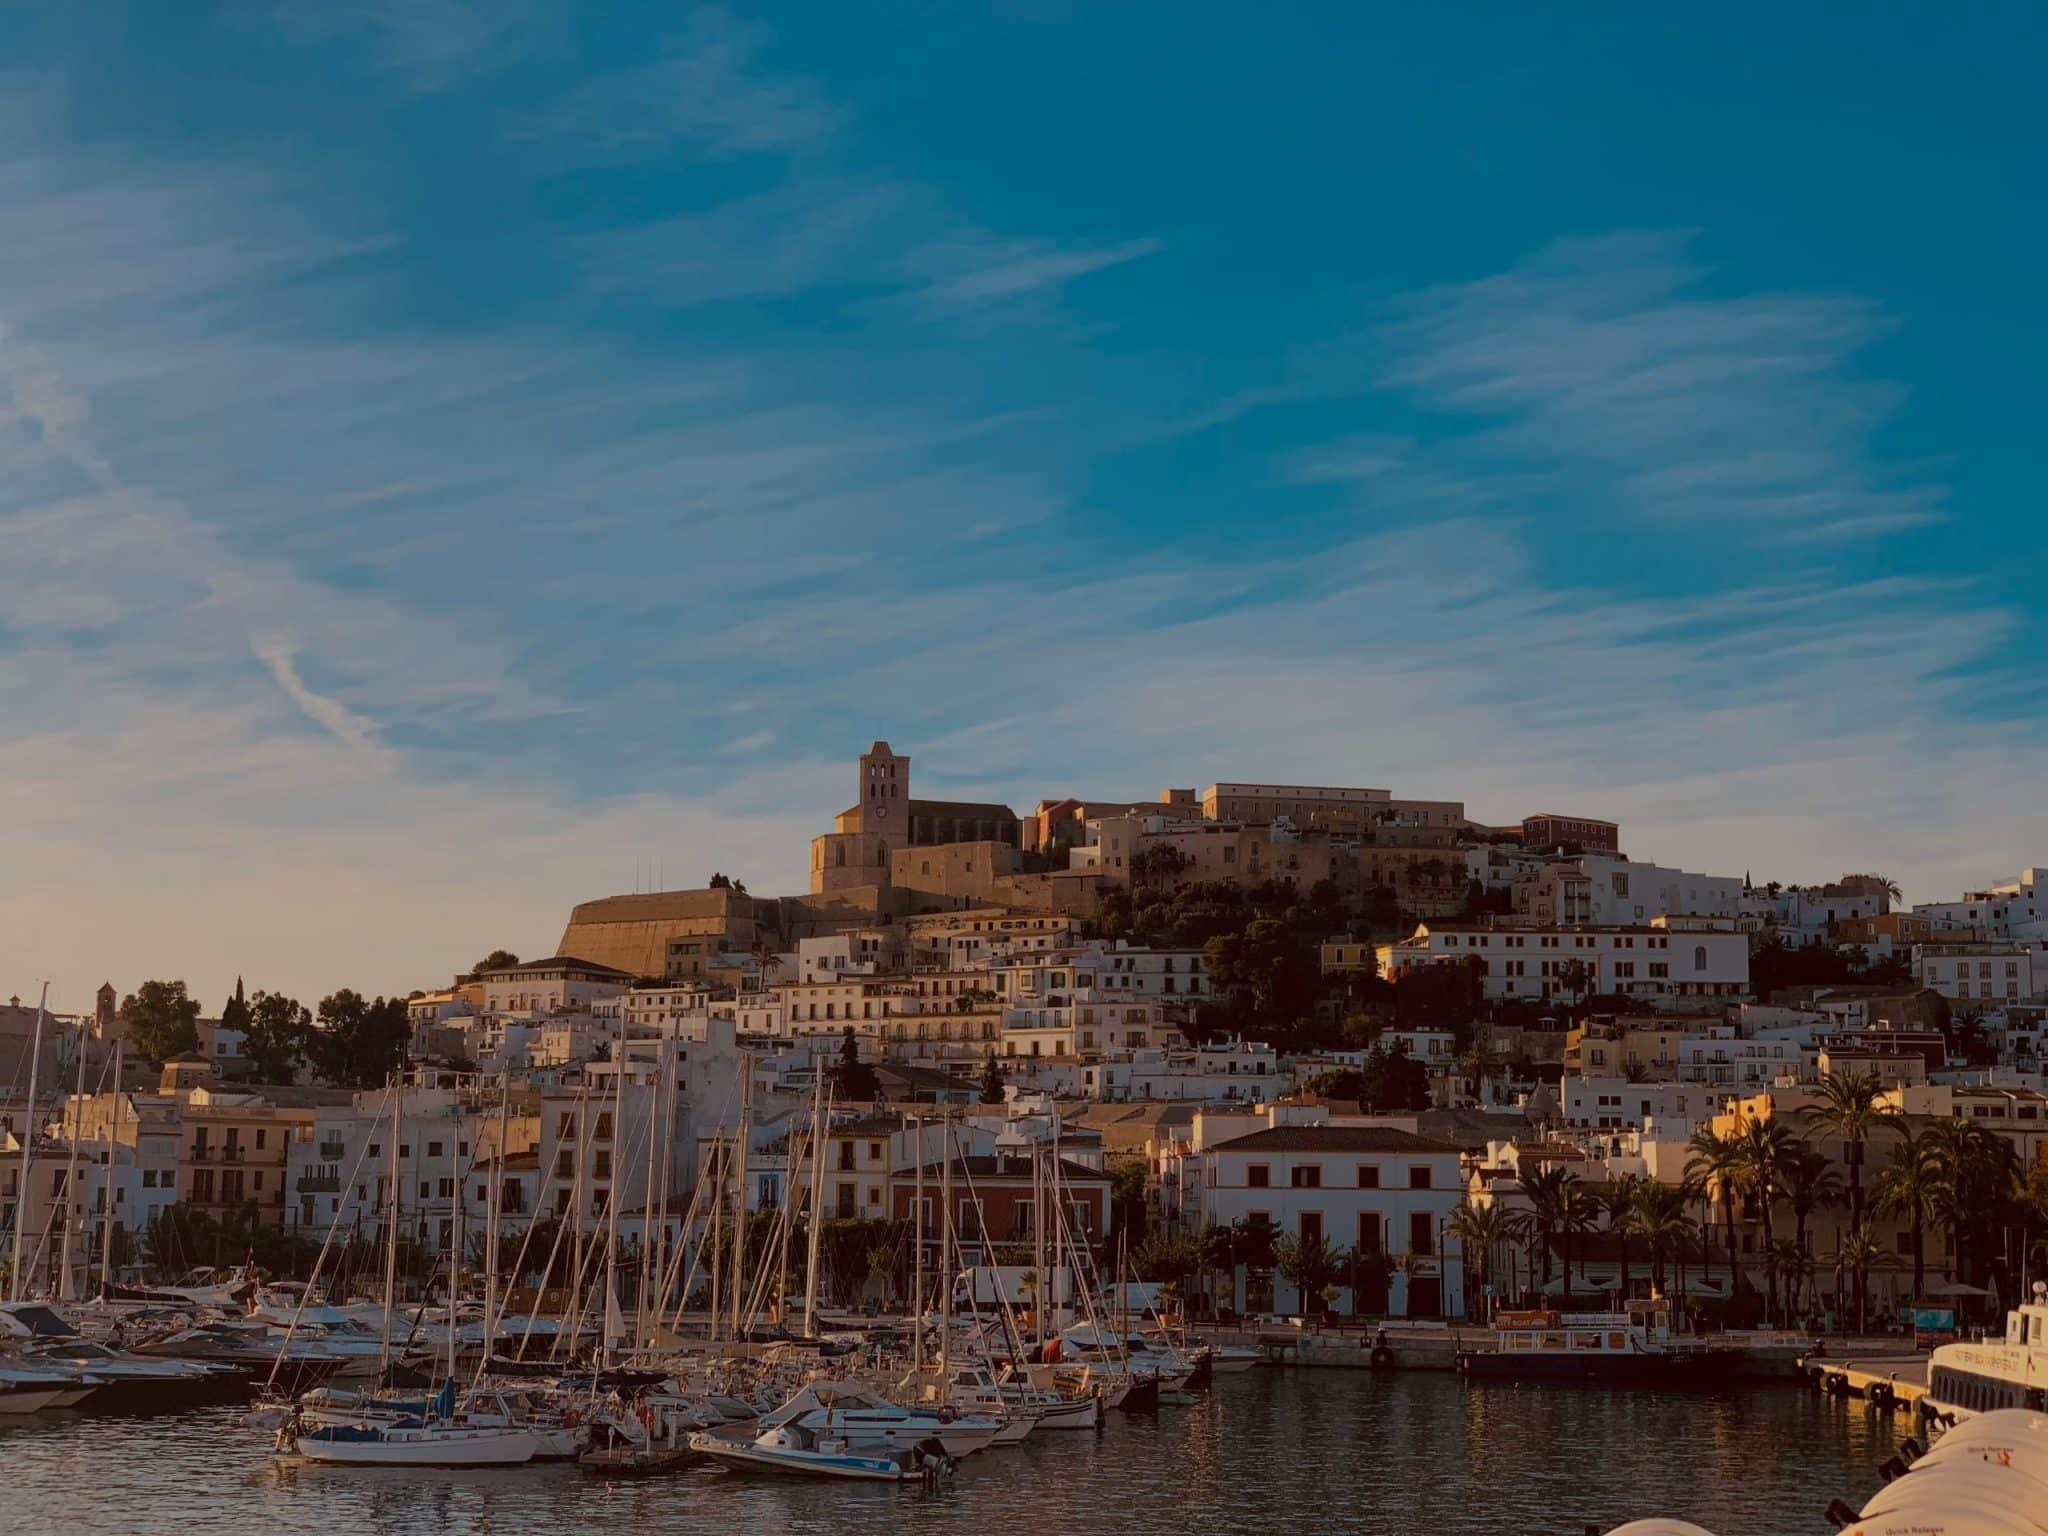 Erkunden Sie das Paradies: Willkommen auf Ibiza! 🌴🌞